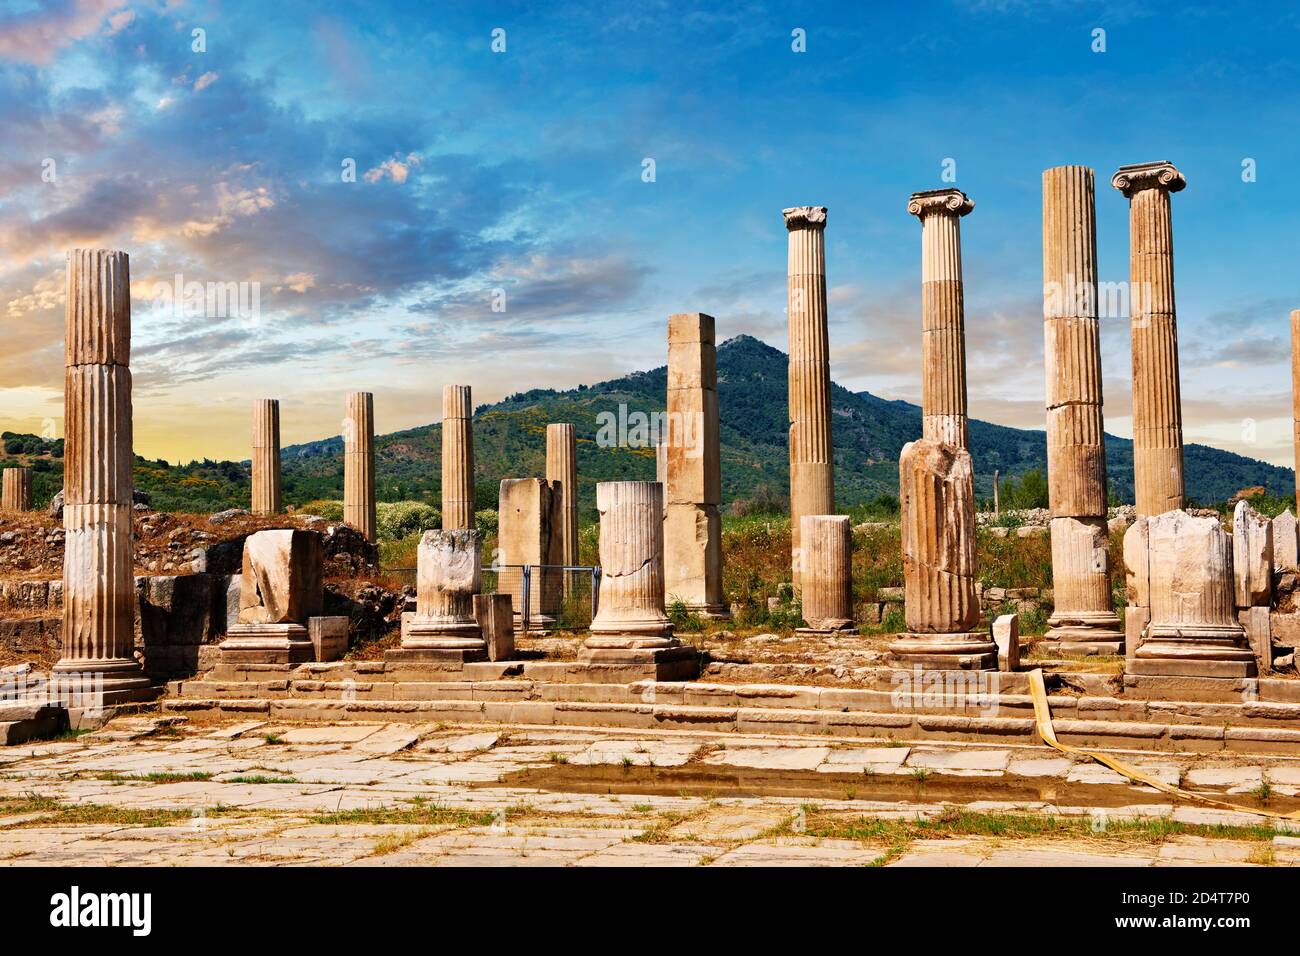 Fronton de la porte de 2-1 cent.B.C sur le propylène reliant le sanctuaire d'Artimis à l'Agora, Magnésie sur le site archéologique de Meander, Turquie Banque D'Images